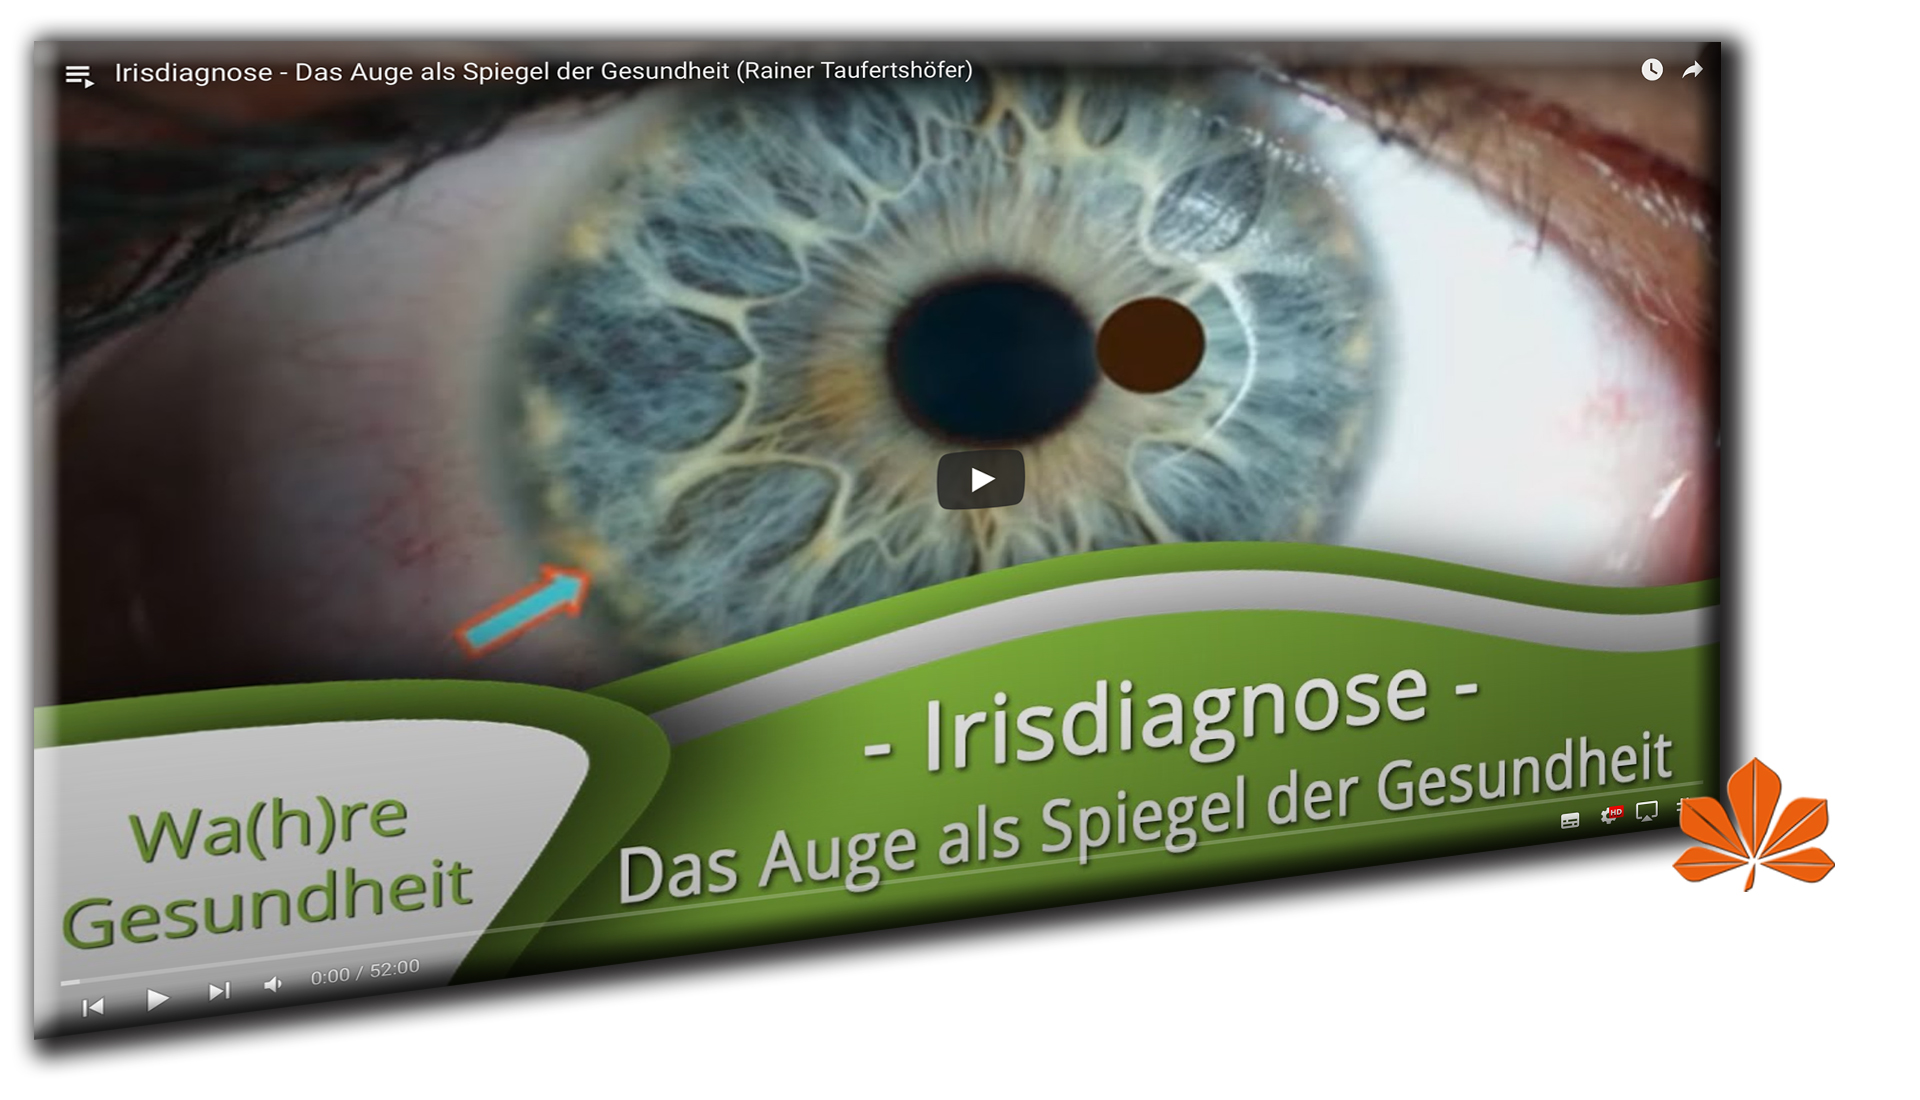 VIDEO_Irisdiagnose_Das_Auge_als_Spiegel_der_Gesundheit_Rainer_Taufertshöfer